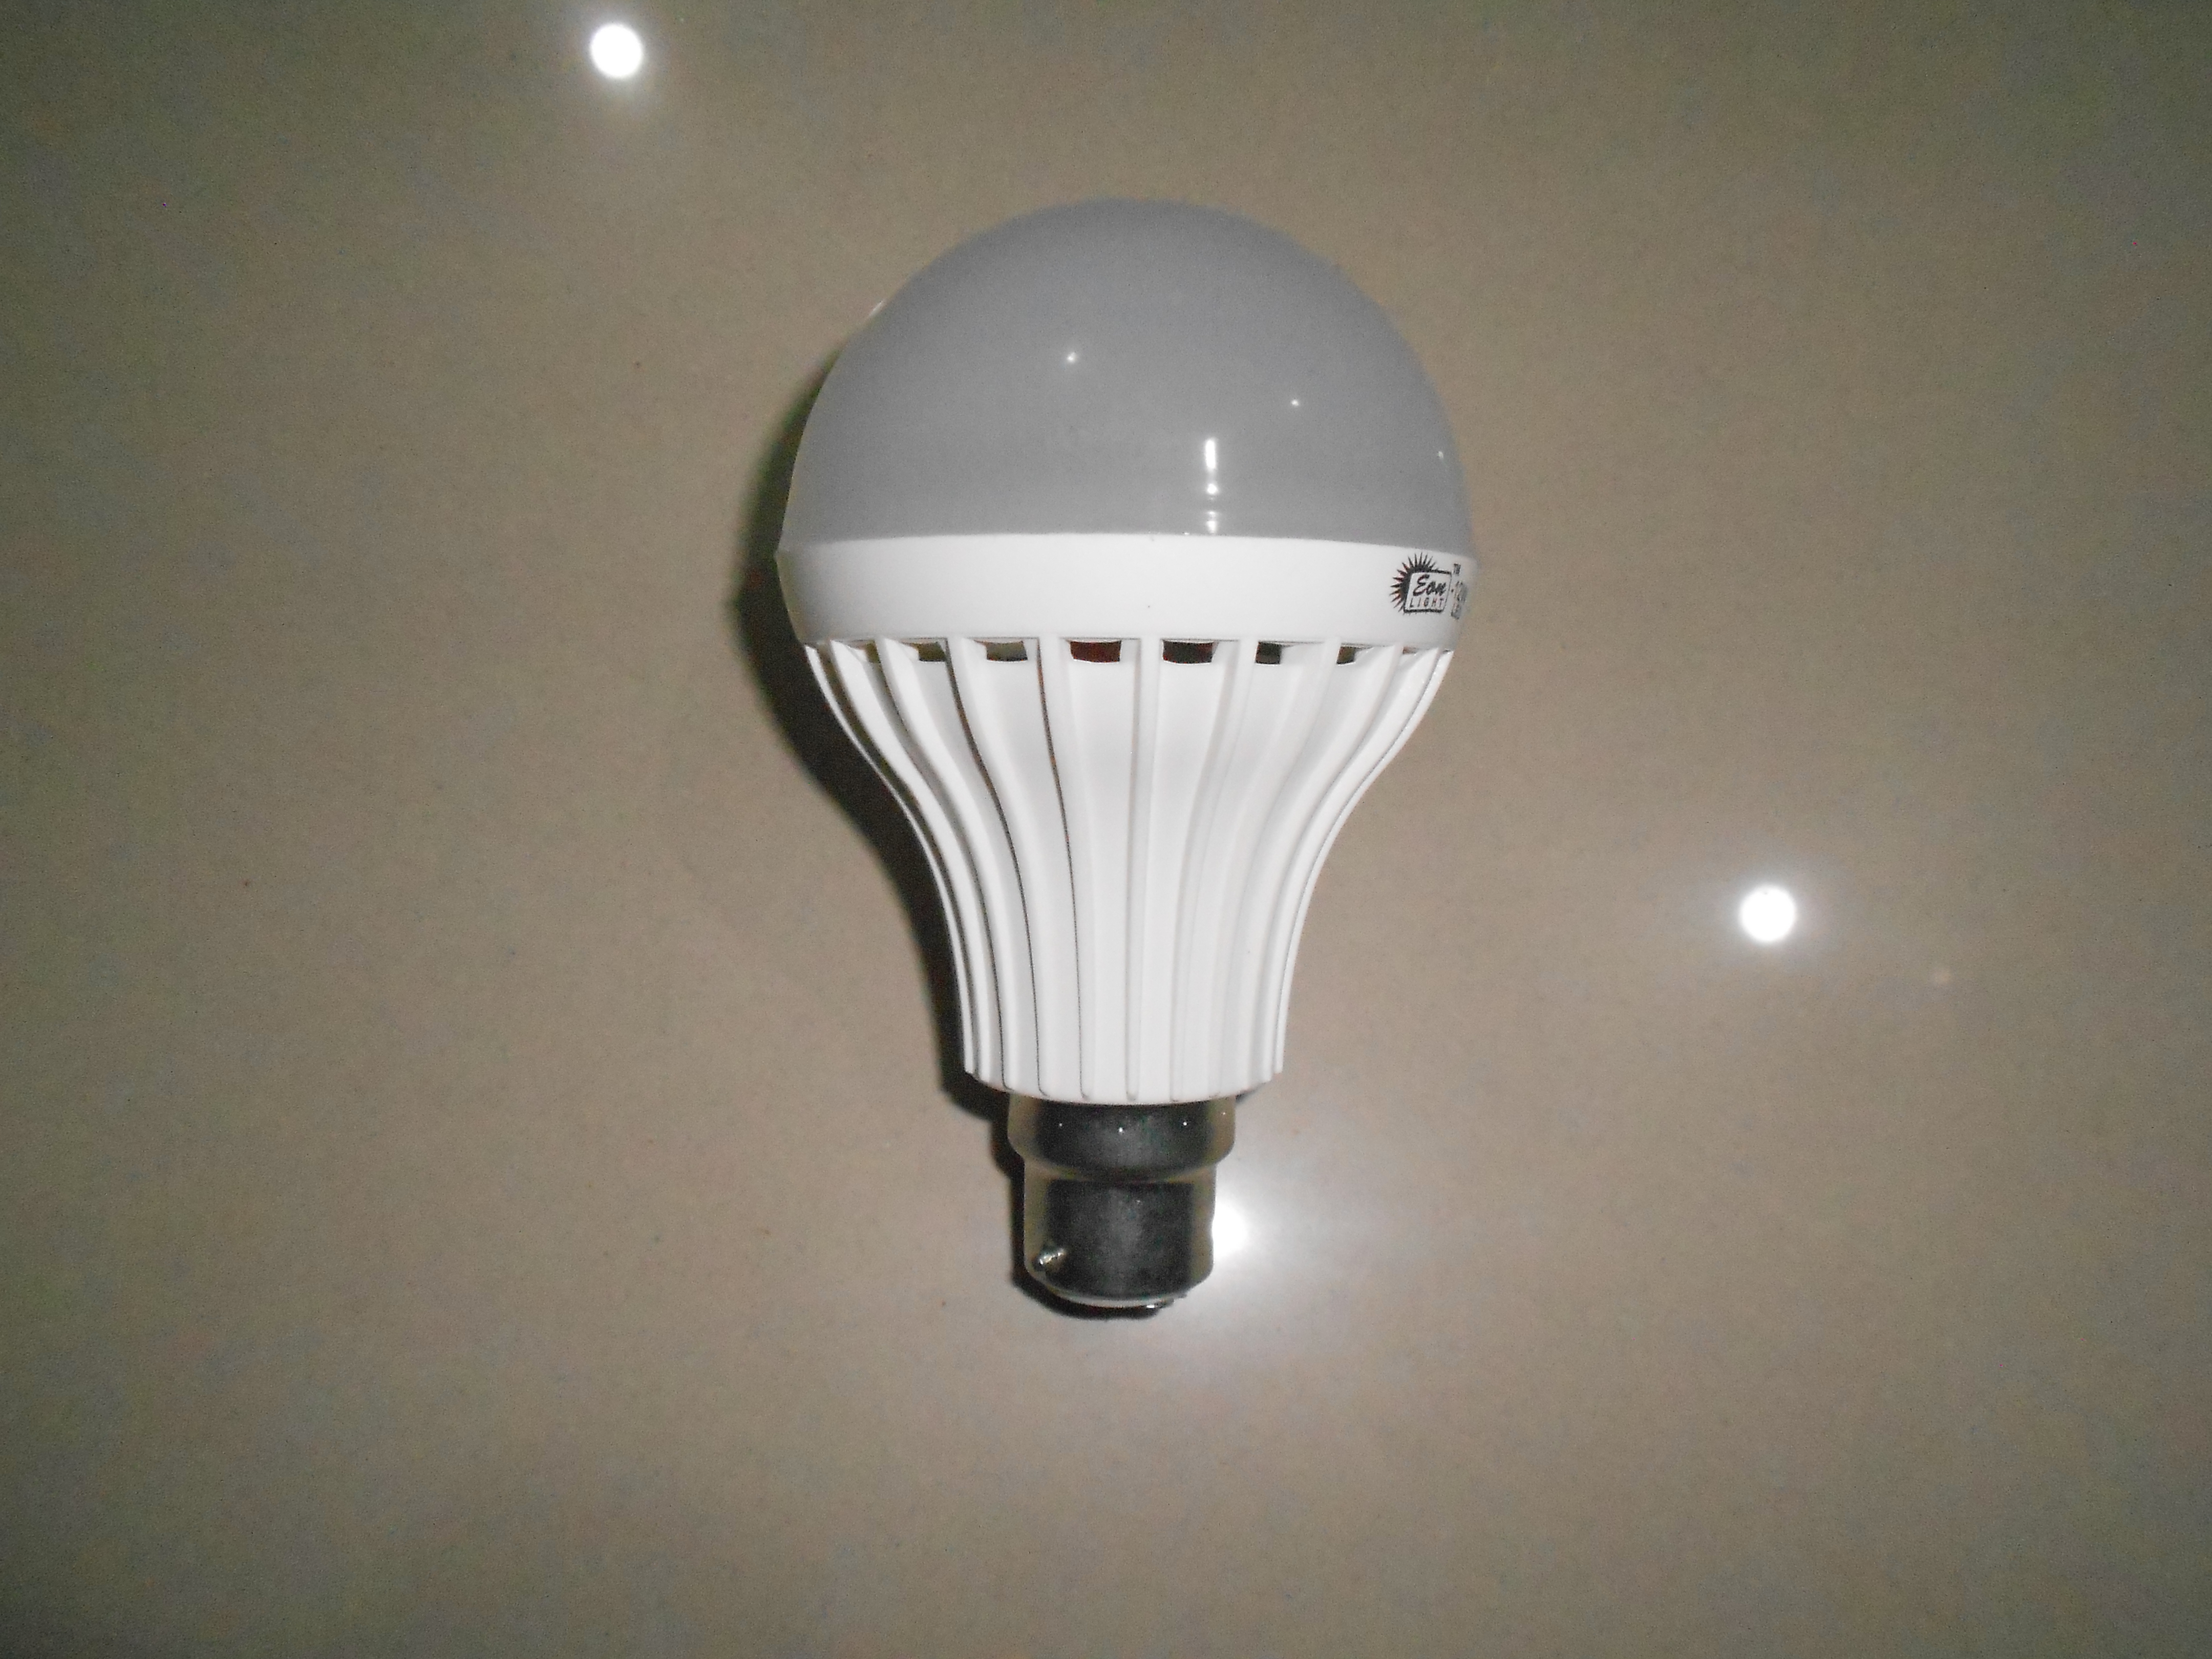 LED Bulb (12W)